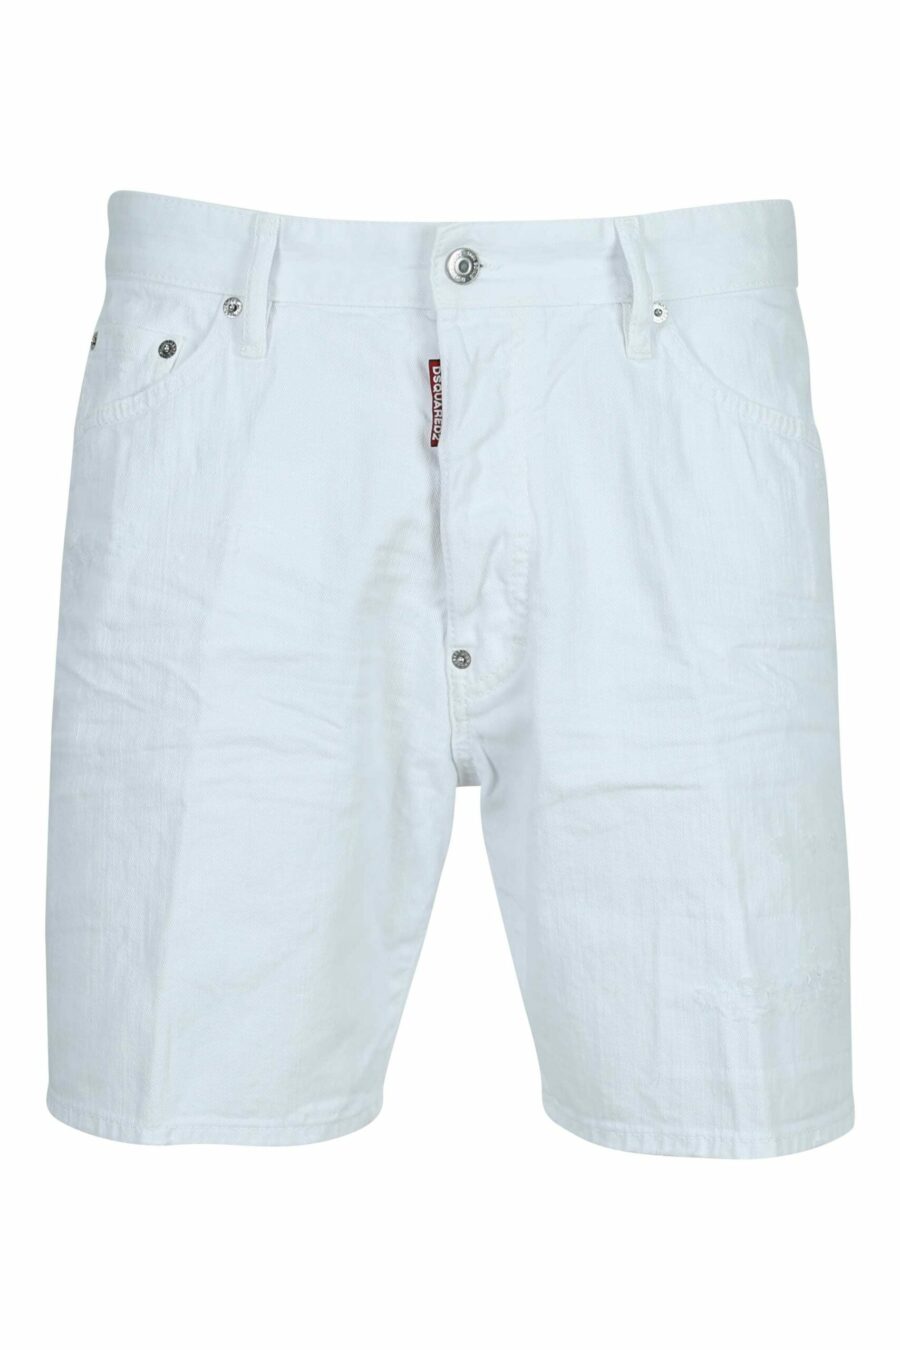 Weiße Denim-Shorts "marine short" - 8054148478155 skaliert